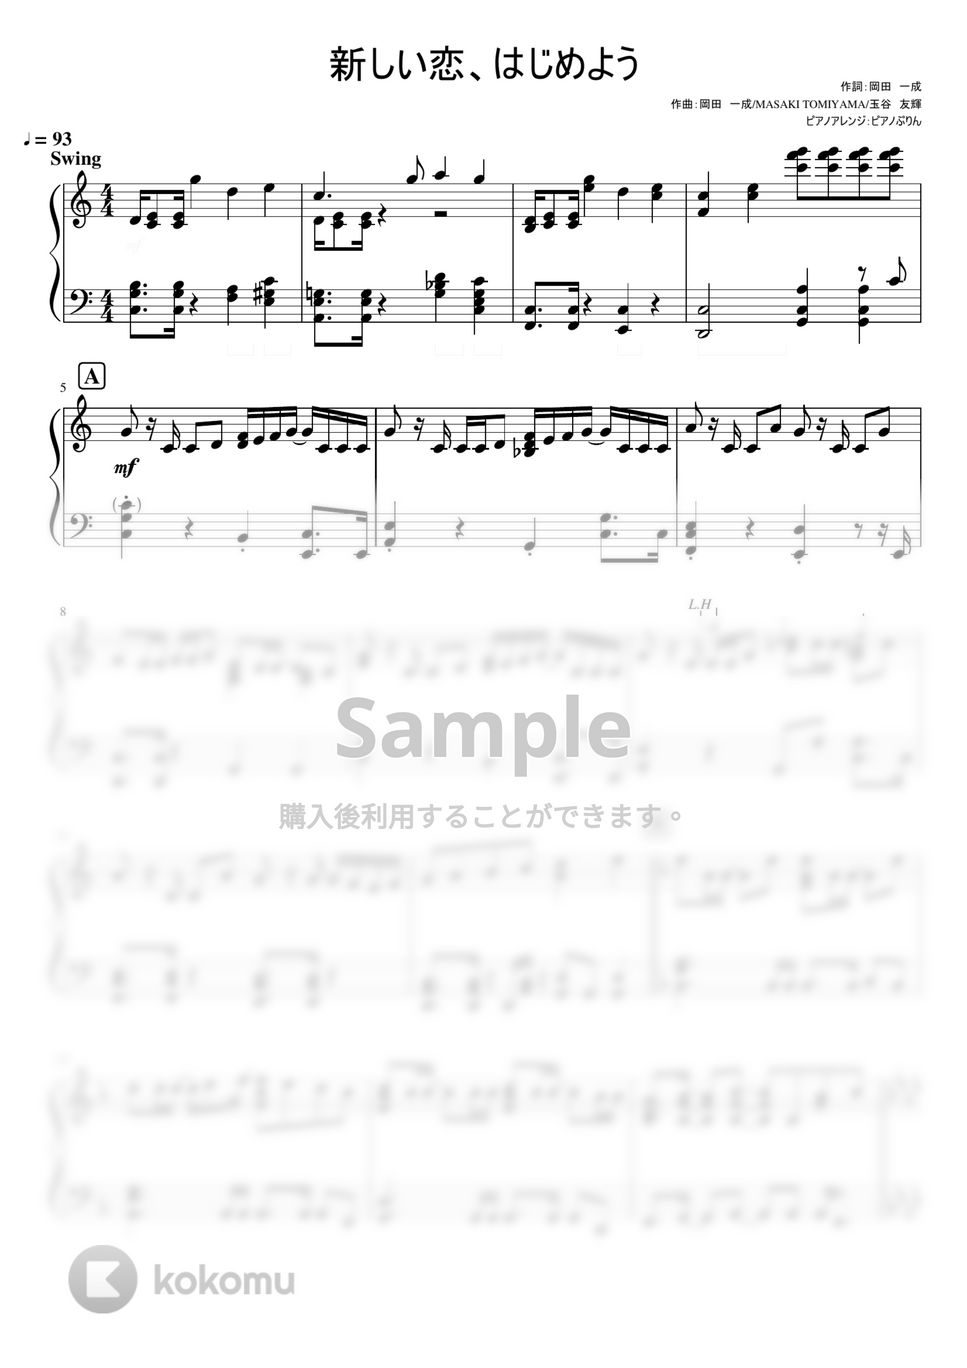 なにわ男子 - 新しい恋、はじめよう (なにわ男子 4th Single『Special Kiss』) by ピアノぷりん